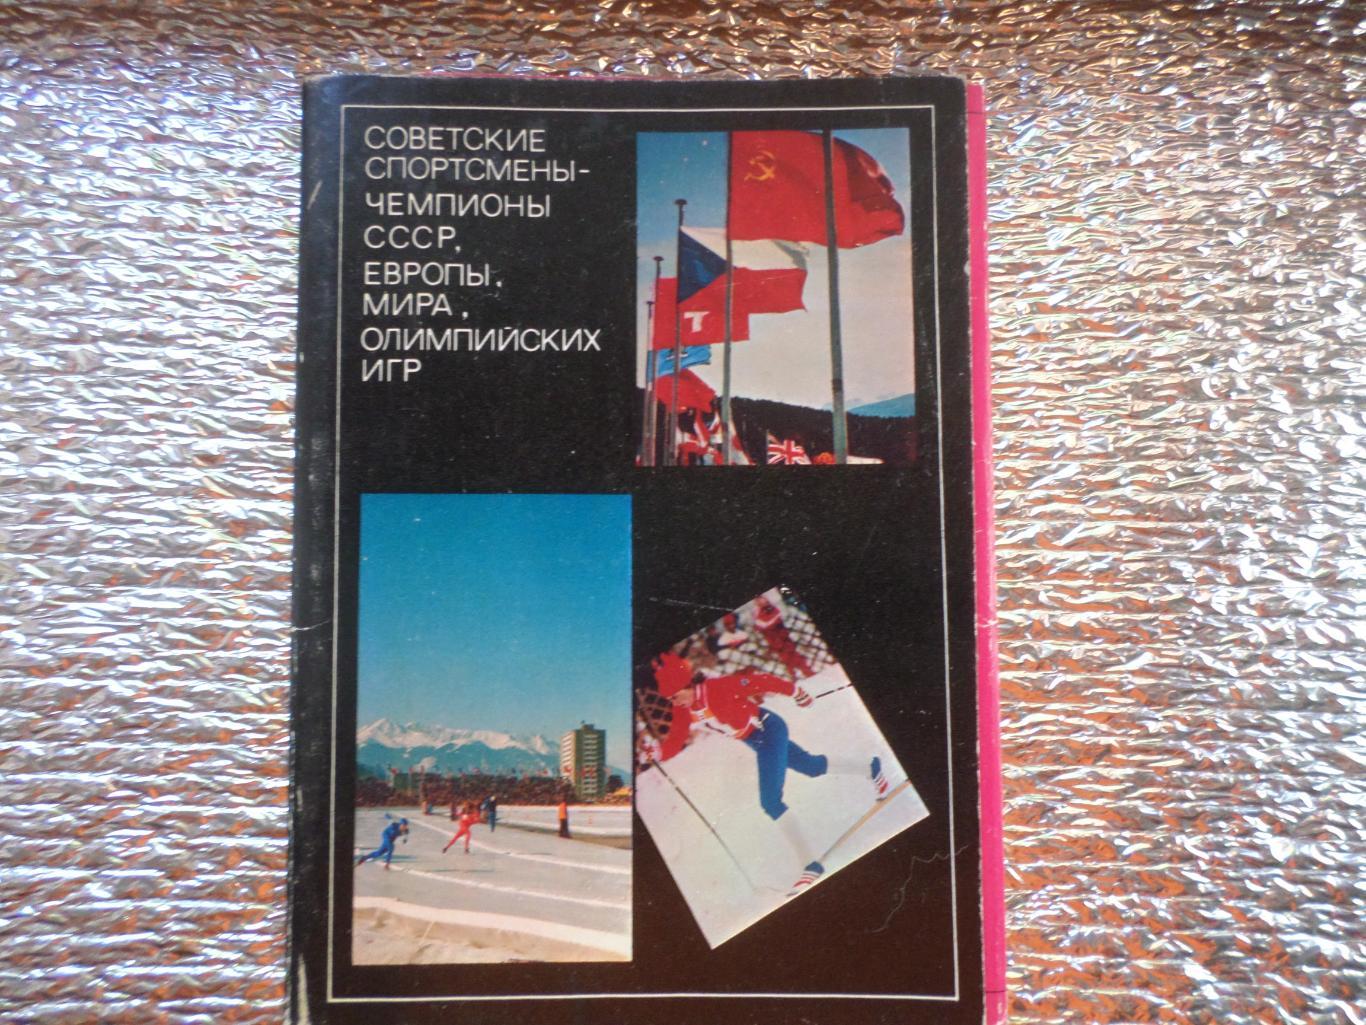 Набор открыток Советские спортсмены - чемпионы СССР, мира, олимпийских игр вып 4